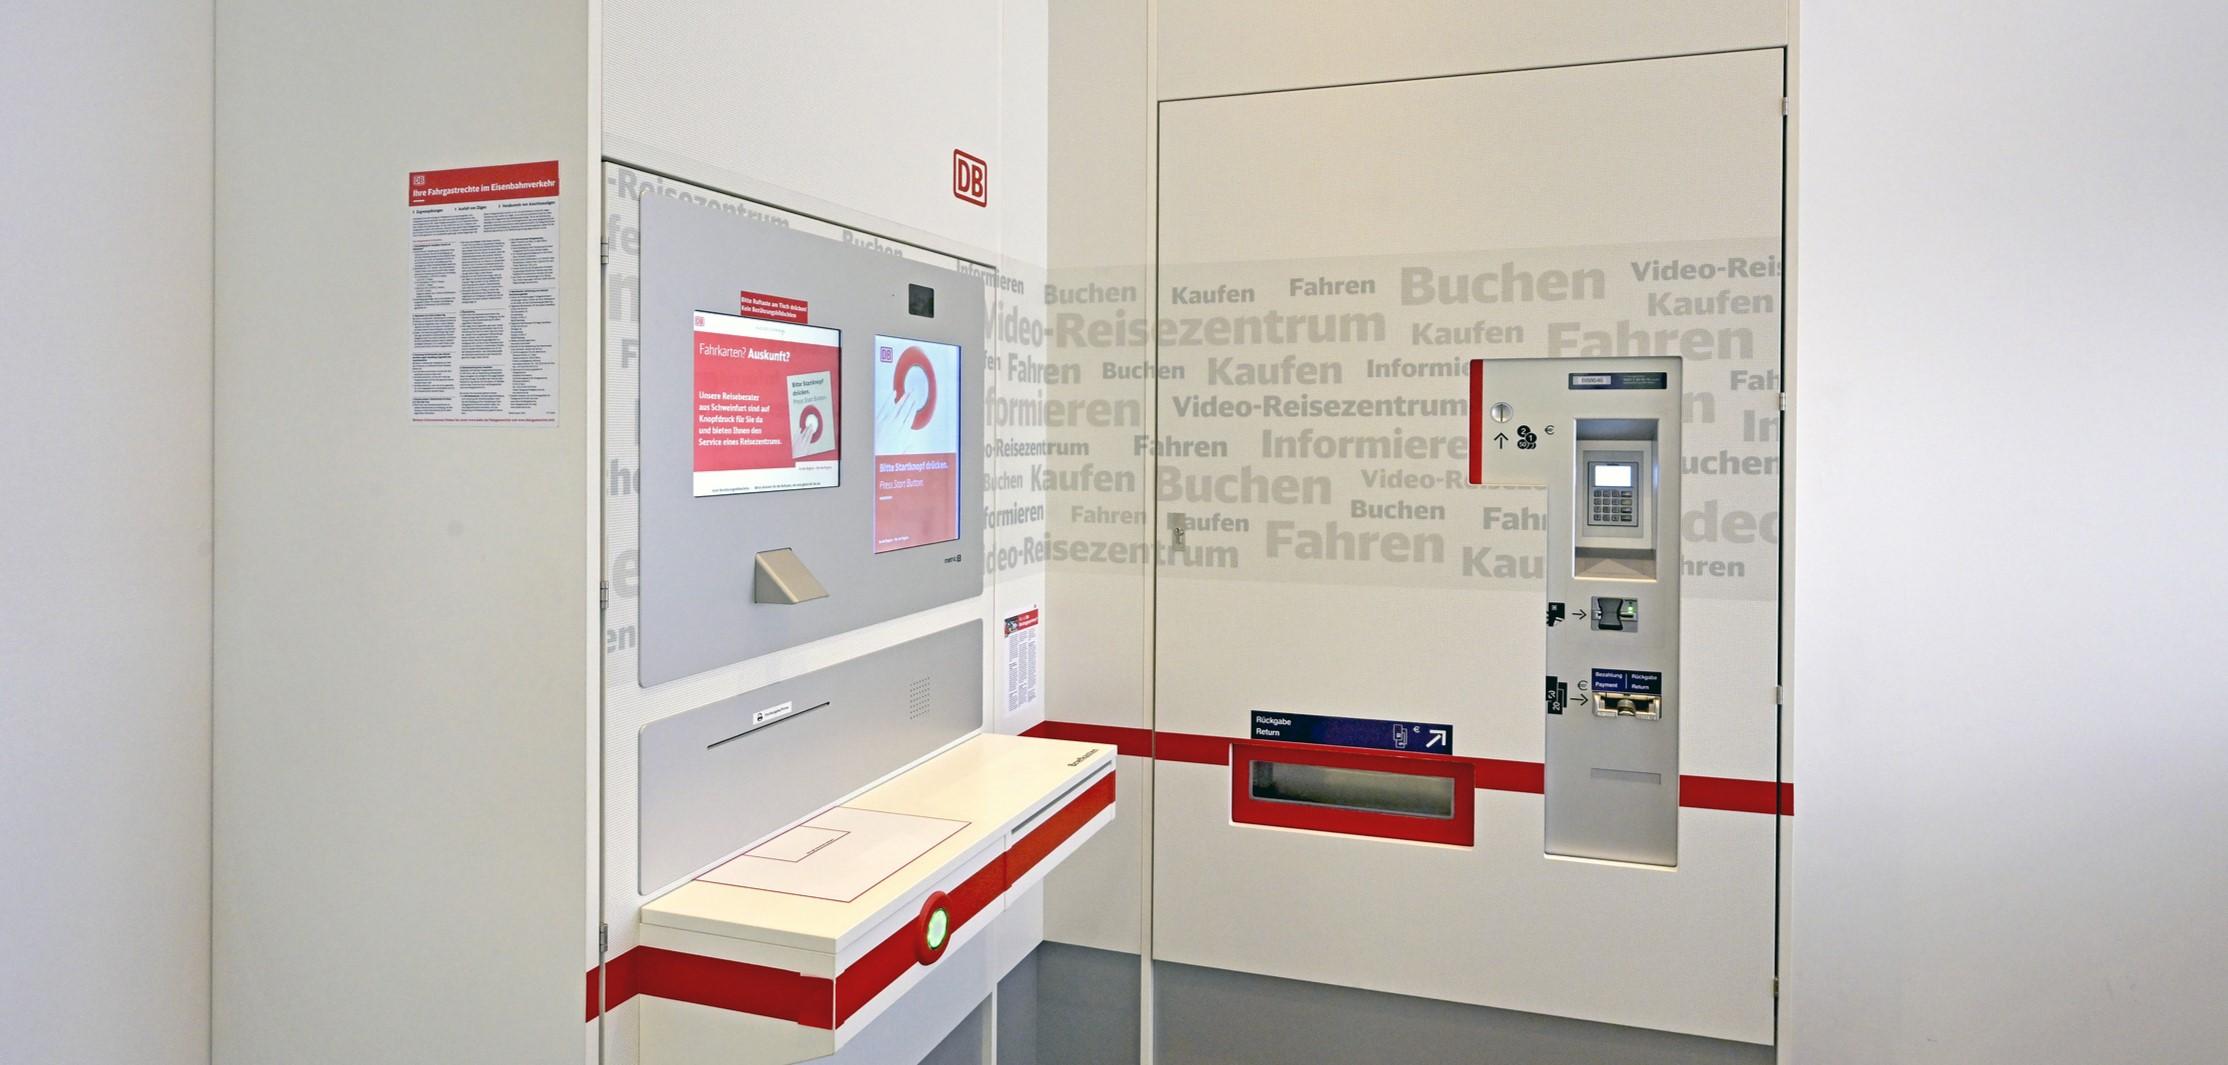 Ein DB Video-Reisezentrum bestehend aus zwei Bildschirmen und einem Bezahlterminal.